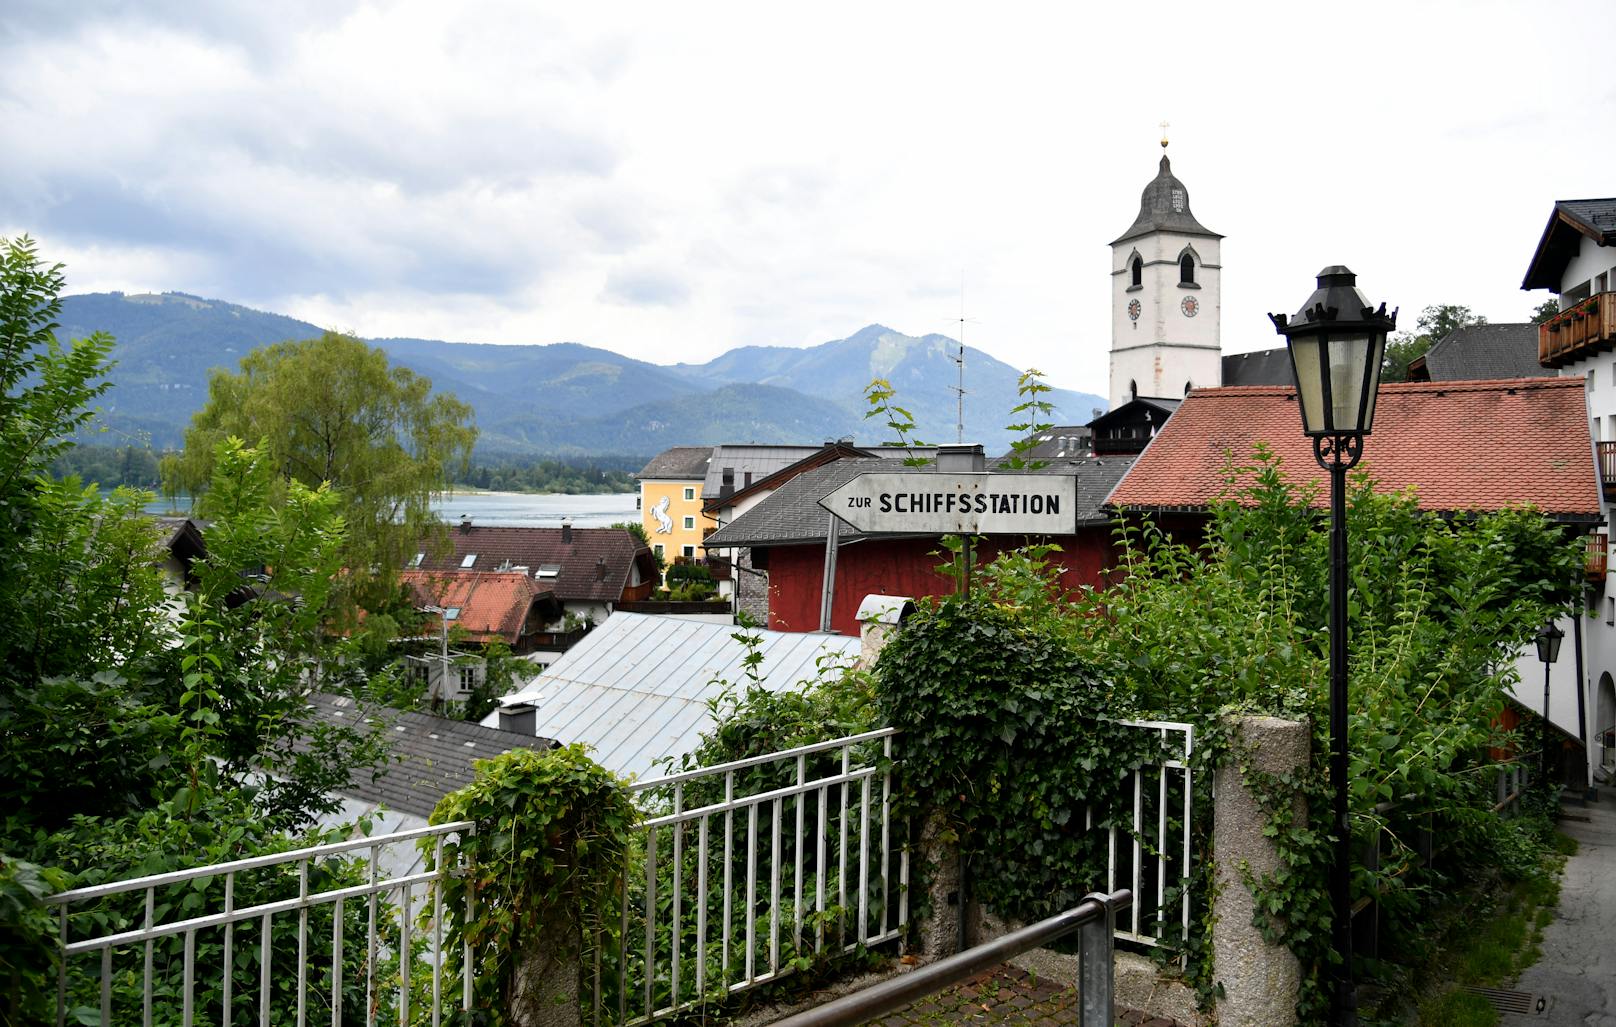 Corona-Cluster St. Wolfgang im Salzkammergut: Infektionsfälle wurden in insgesamt 10 Unterkünften und Lokalen gemeldet (24. Juli 2020)